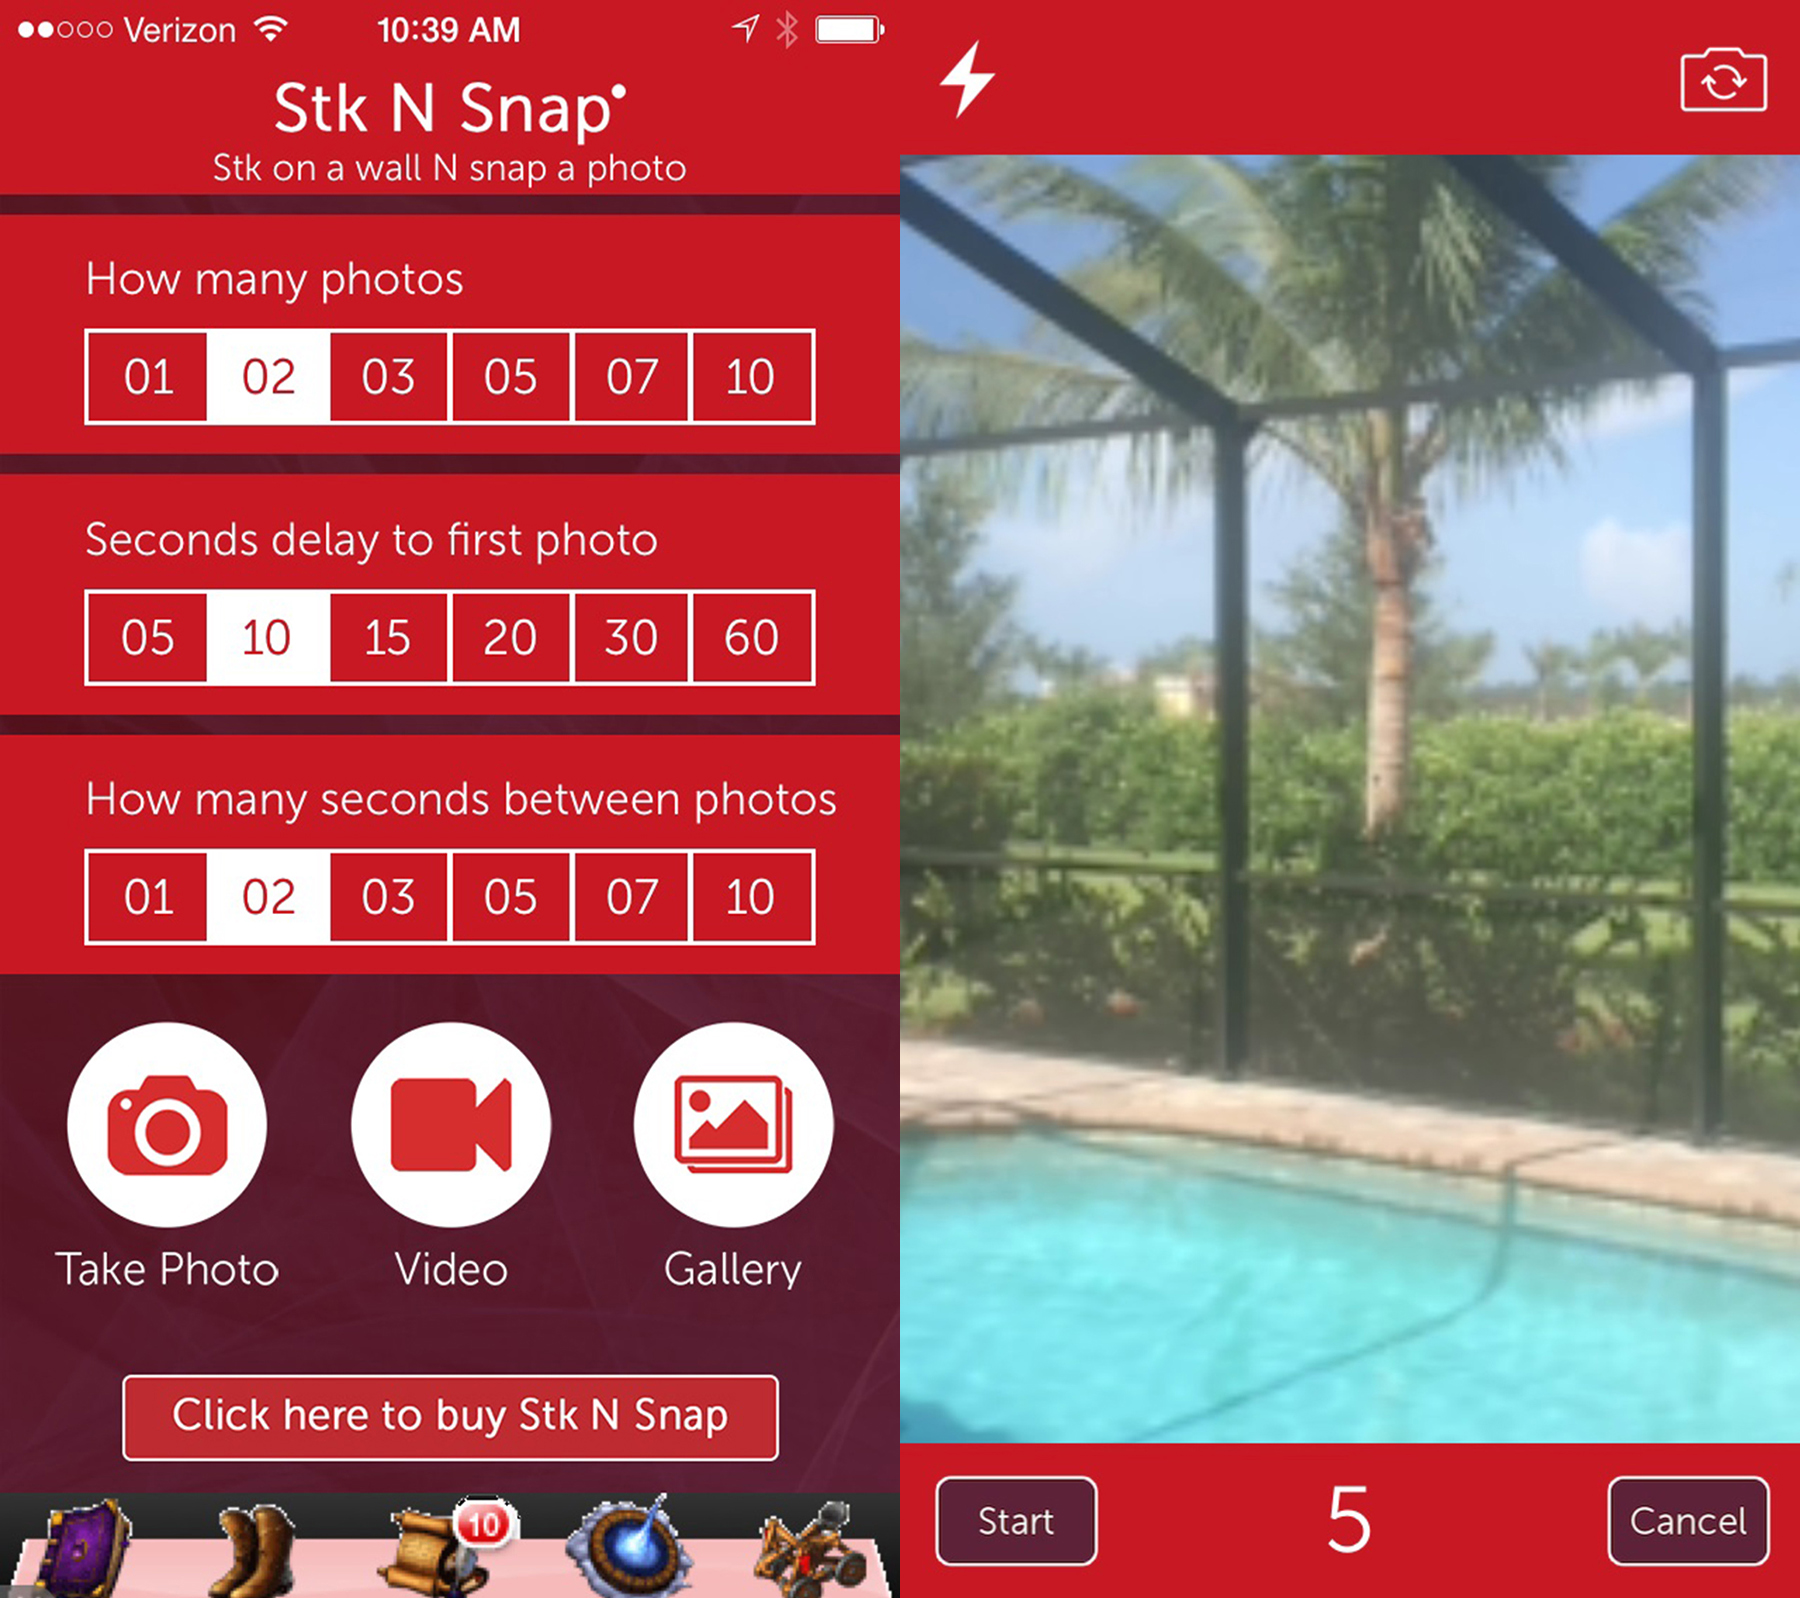 The Stk N Snap App Photo